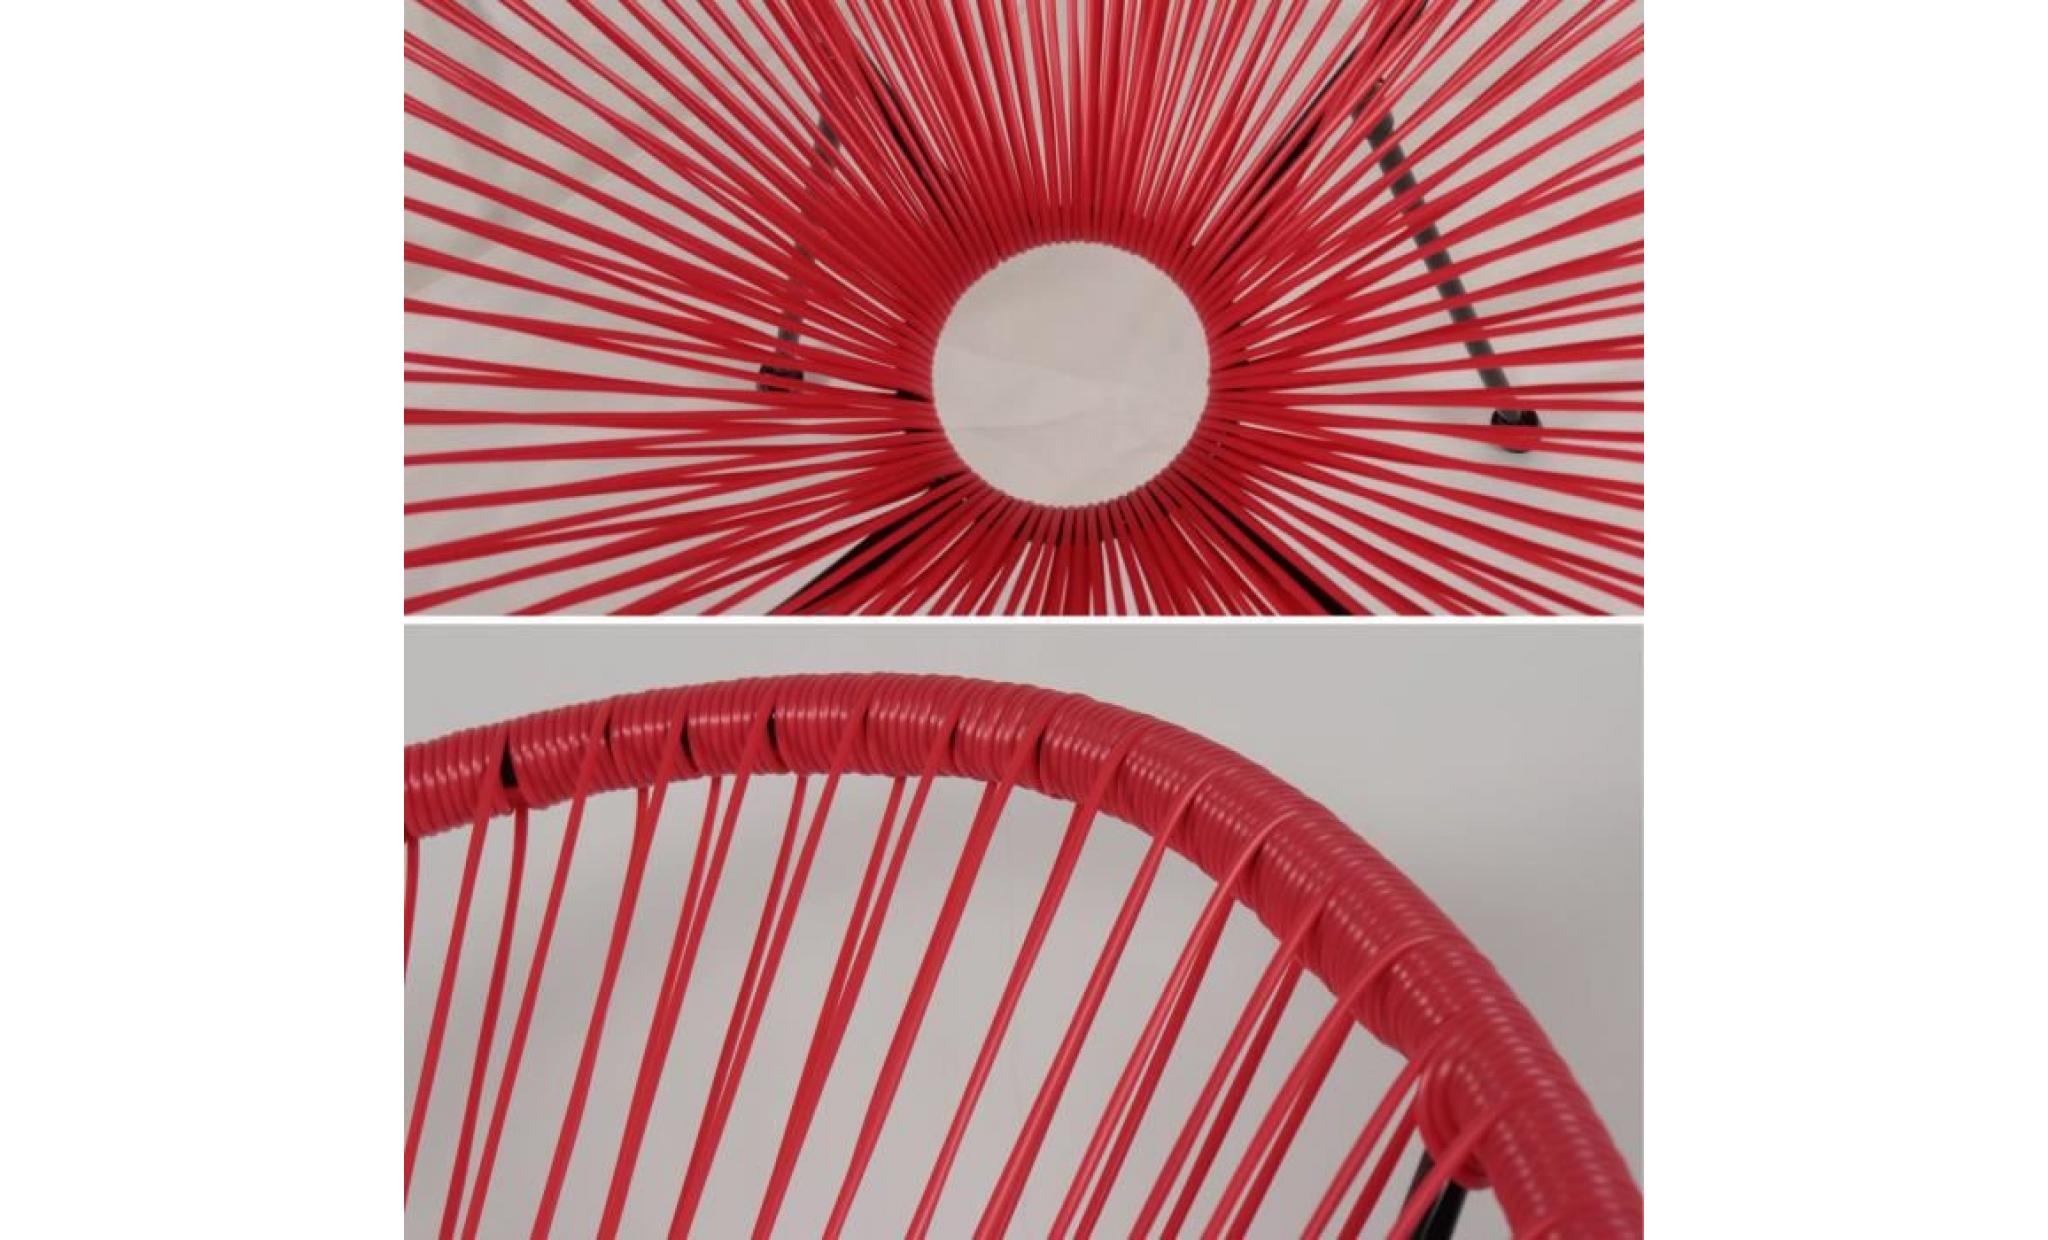 lot de 2 fauteuils design oeuf   acapulco rouge framboise   fauteuils 4 pieds design rétro, cordage plastique, intérieur / extérieur pas cher